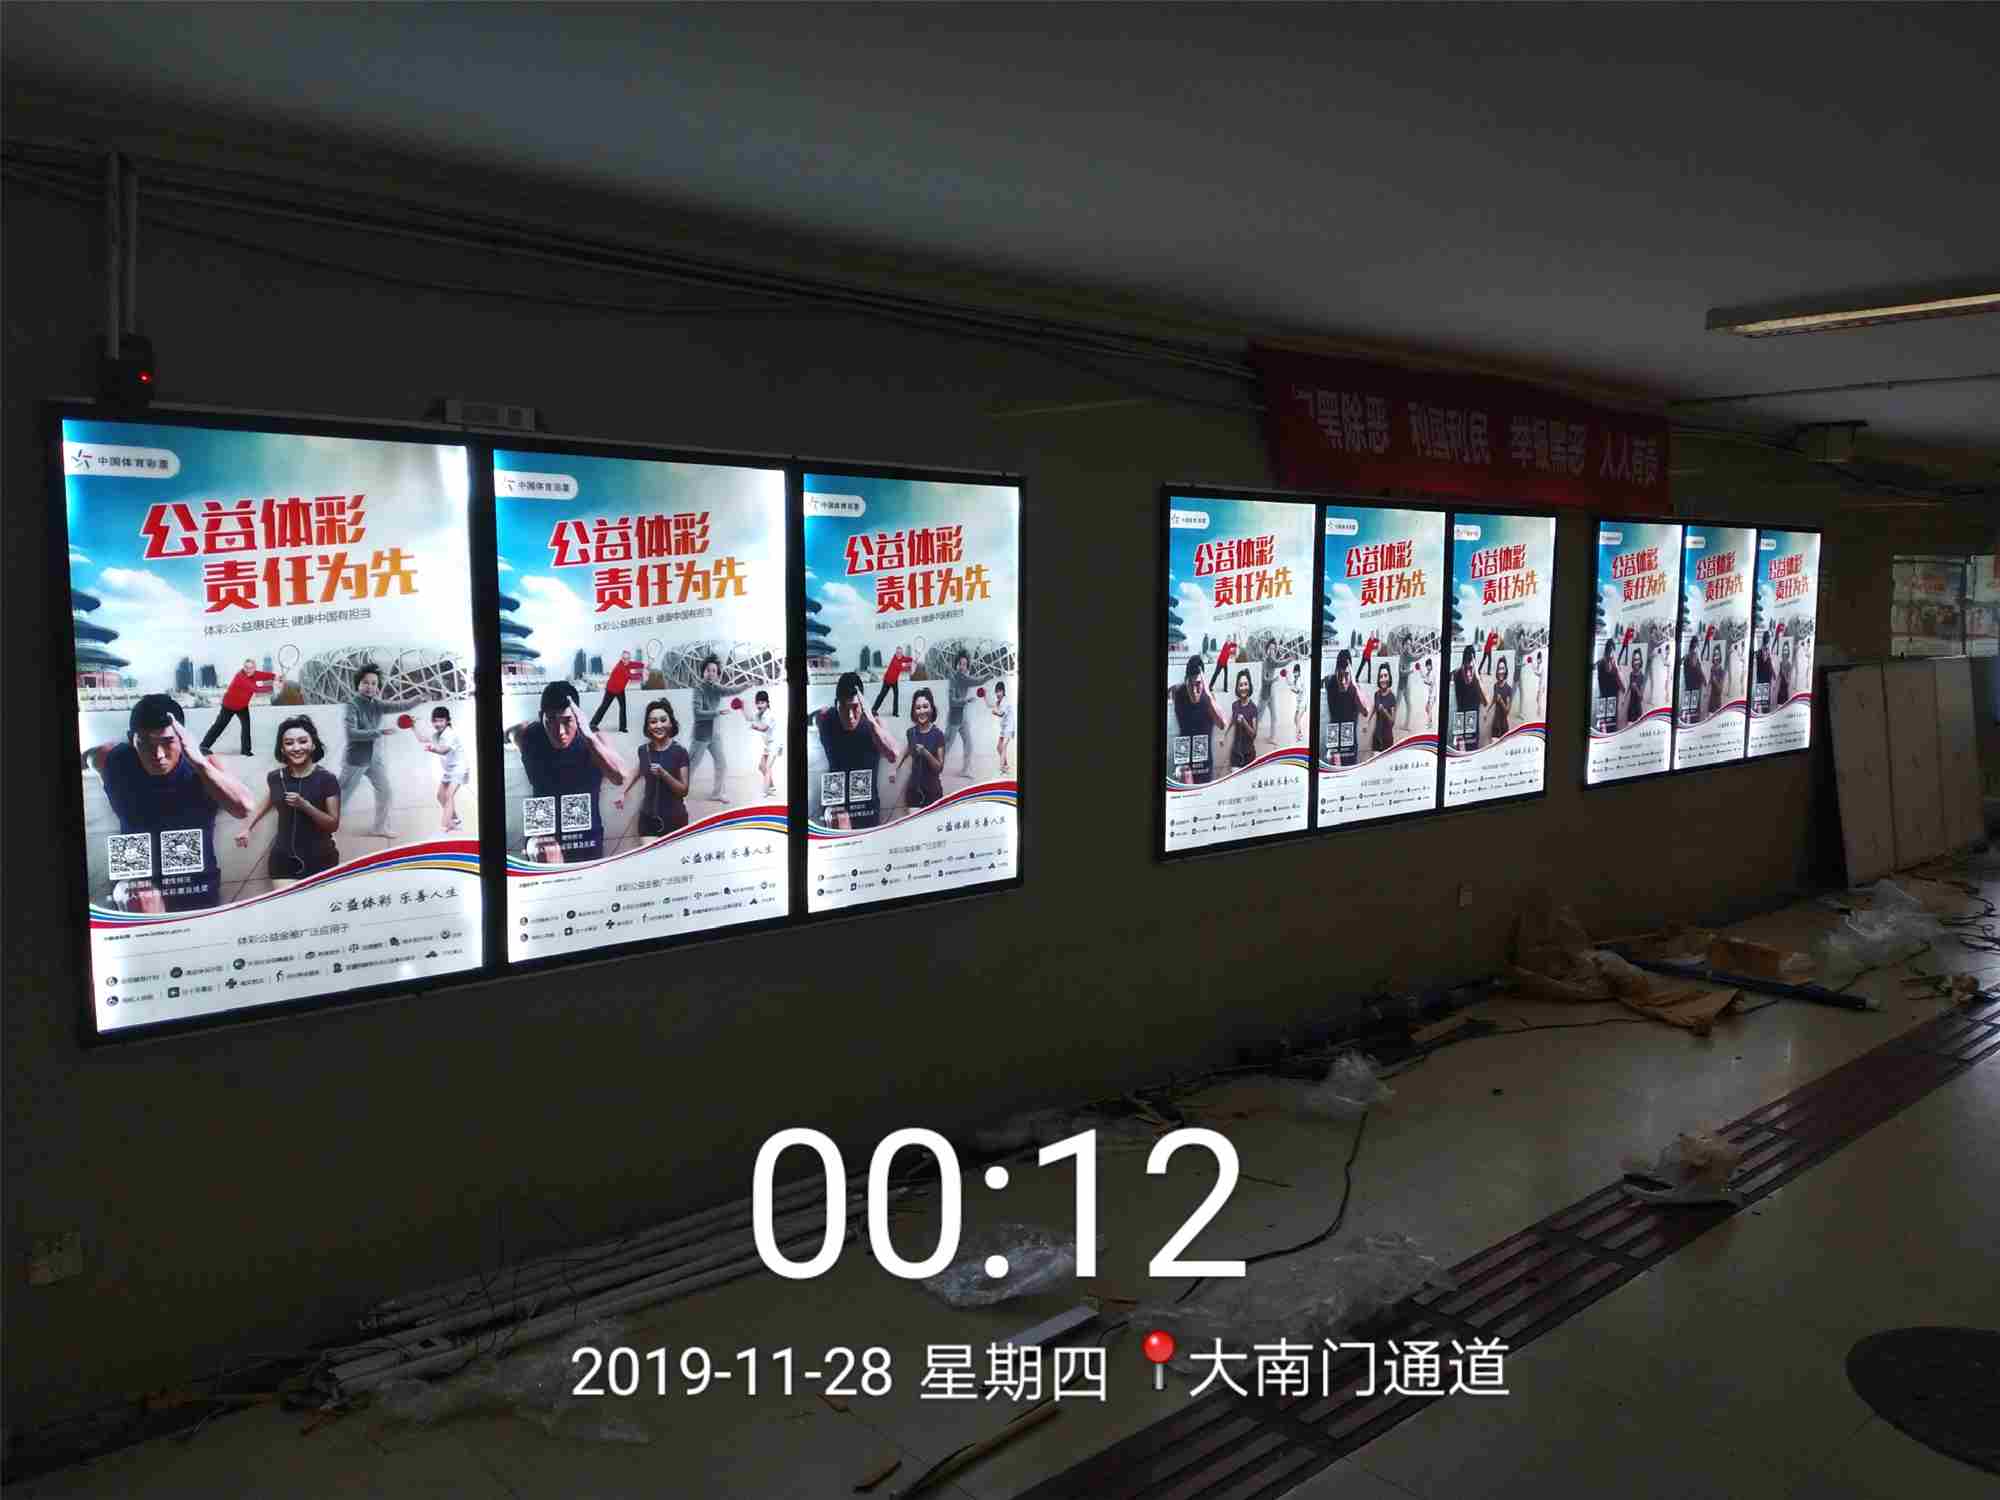 贵阳市大南门地下通道灯箱中国体育彩票广告画面